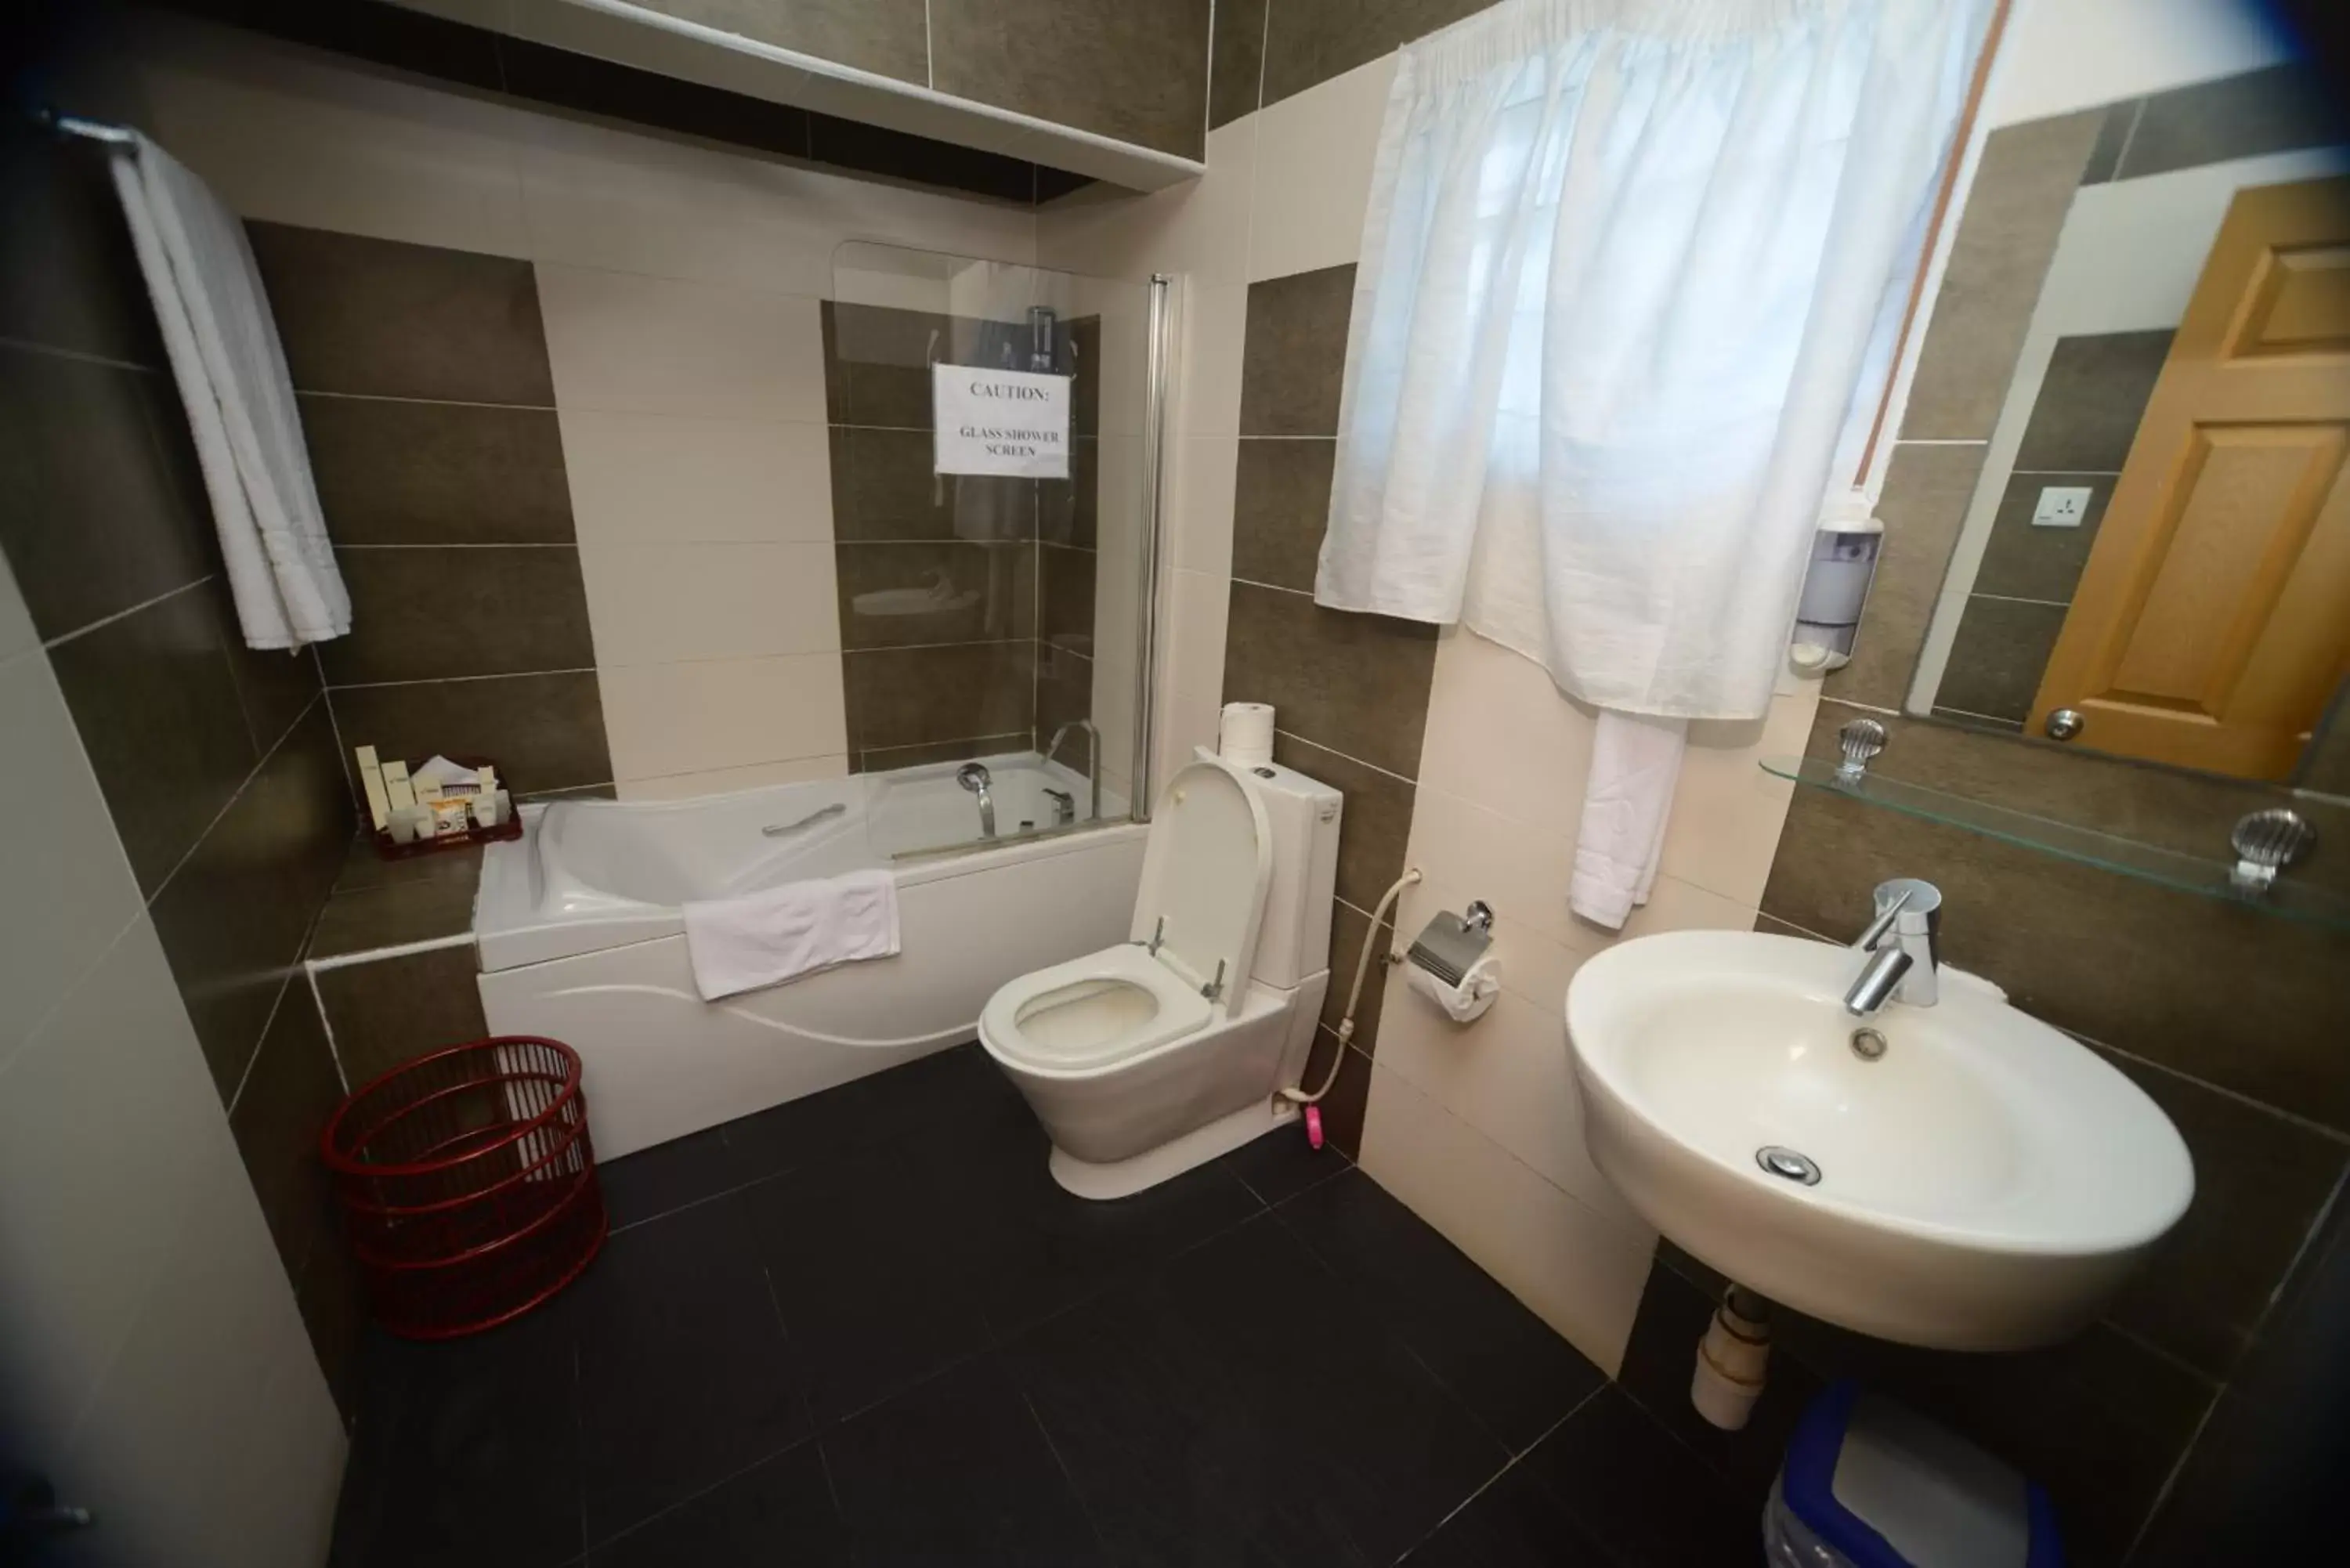 Bathroom in Airside Hotel